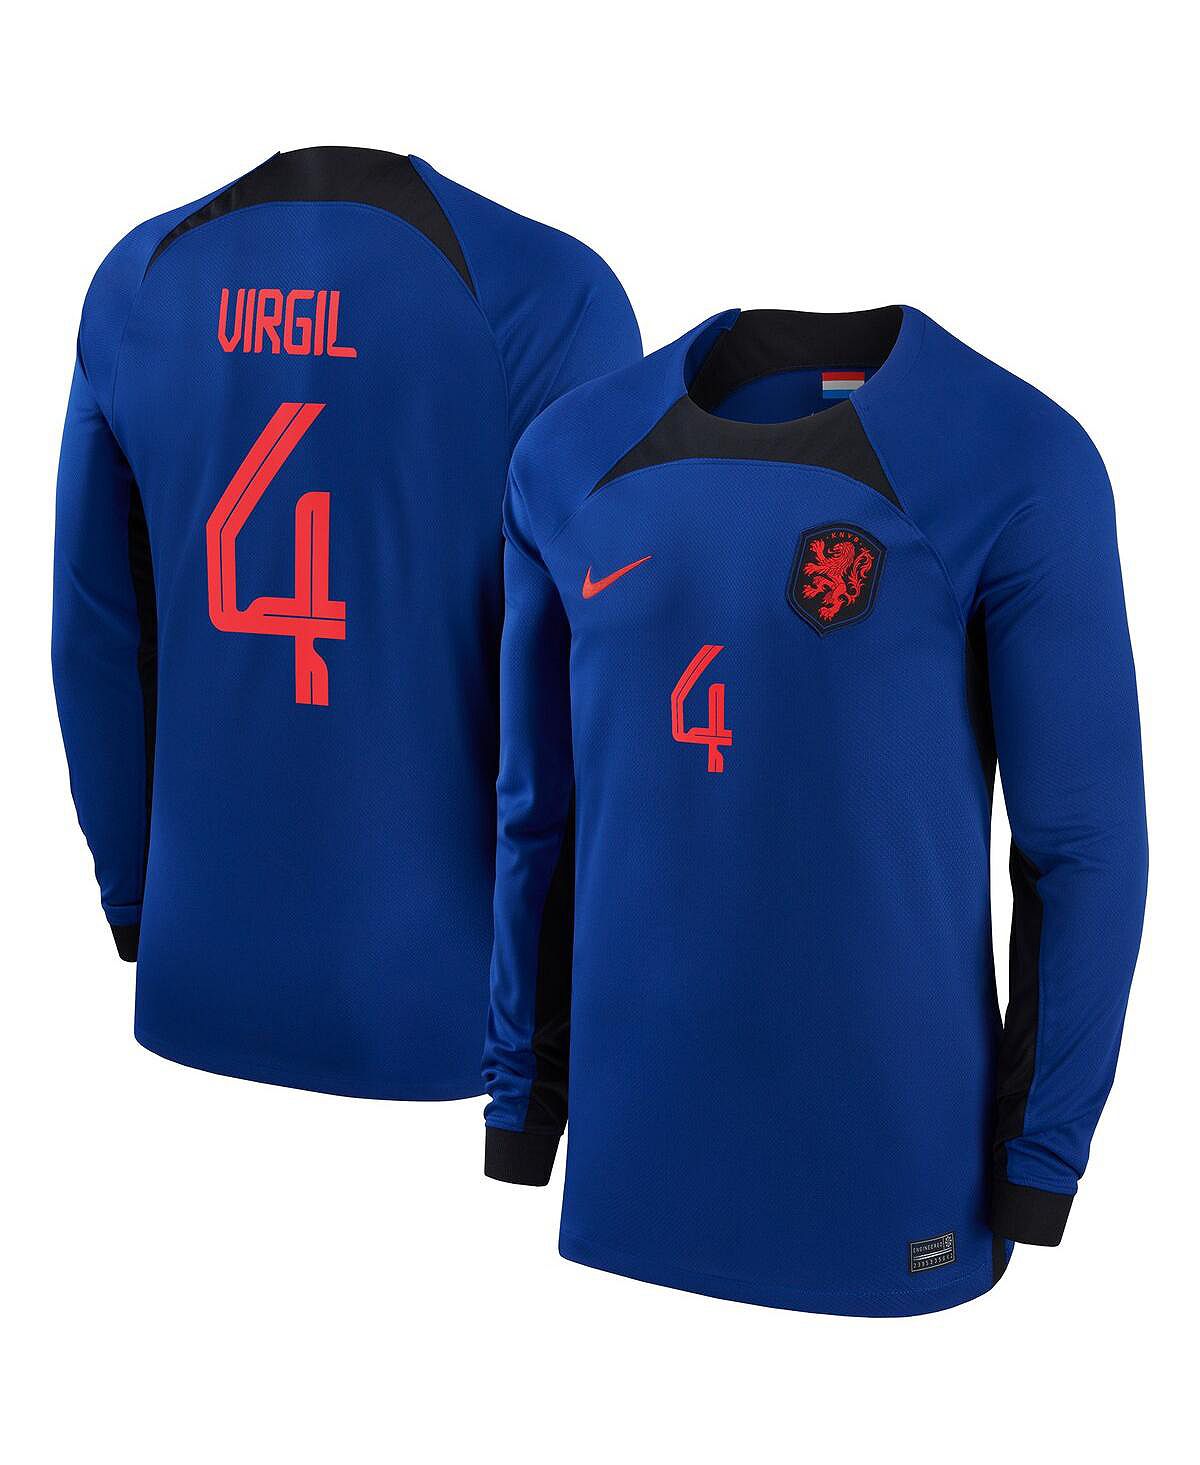 Футболка Nike Men's Virgil Van Dijk Blue Netherlands National Team 2022/23 Away Breathe Stadium, синий/красный пауэрбанк камень заряд бодрости на 2022 год